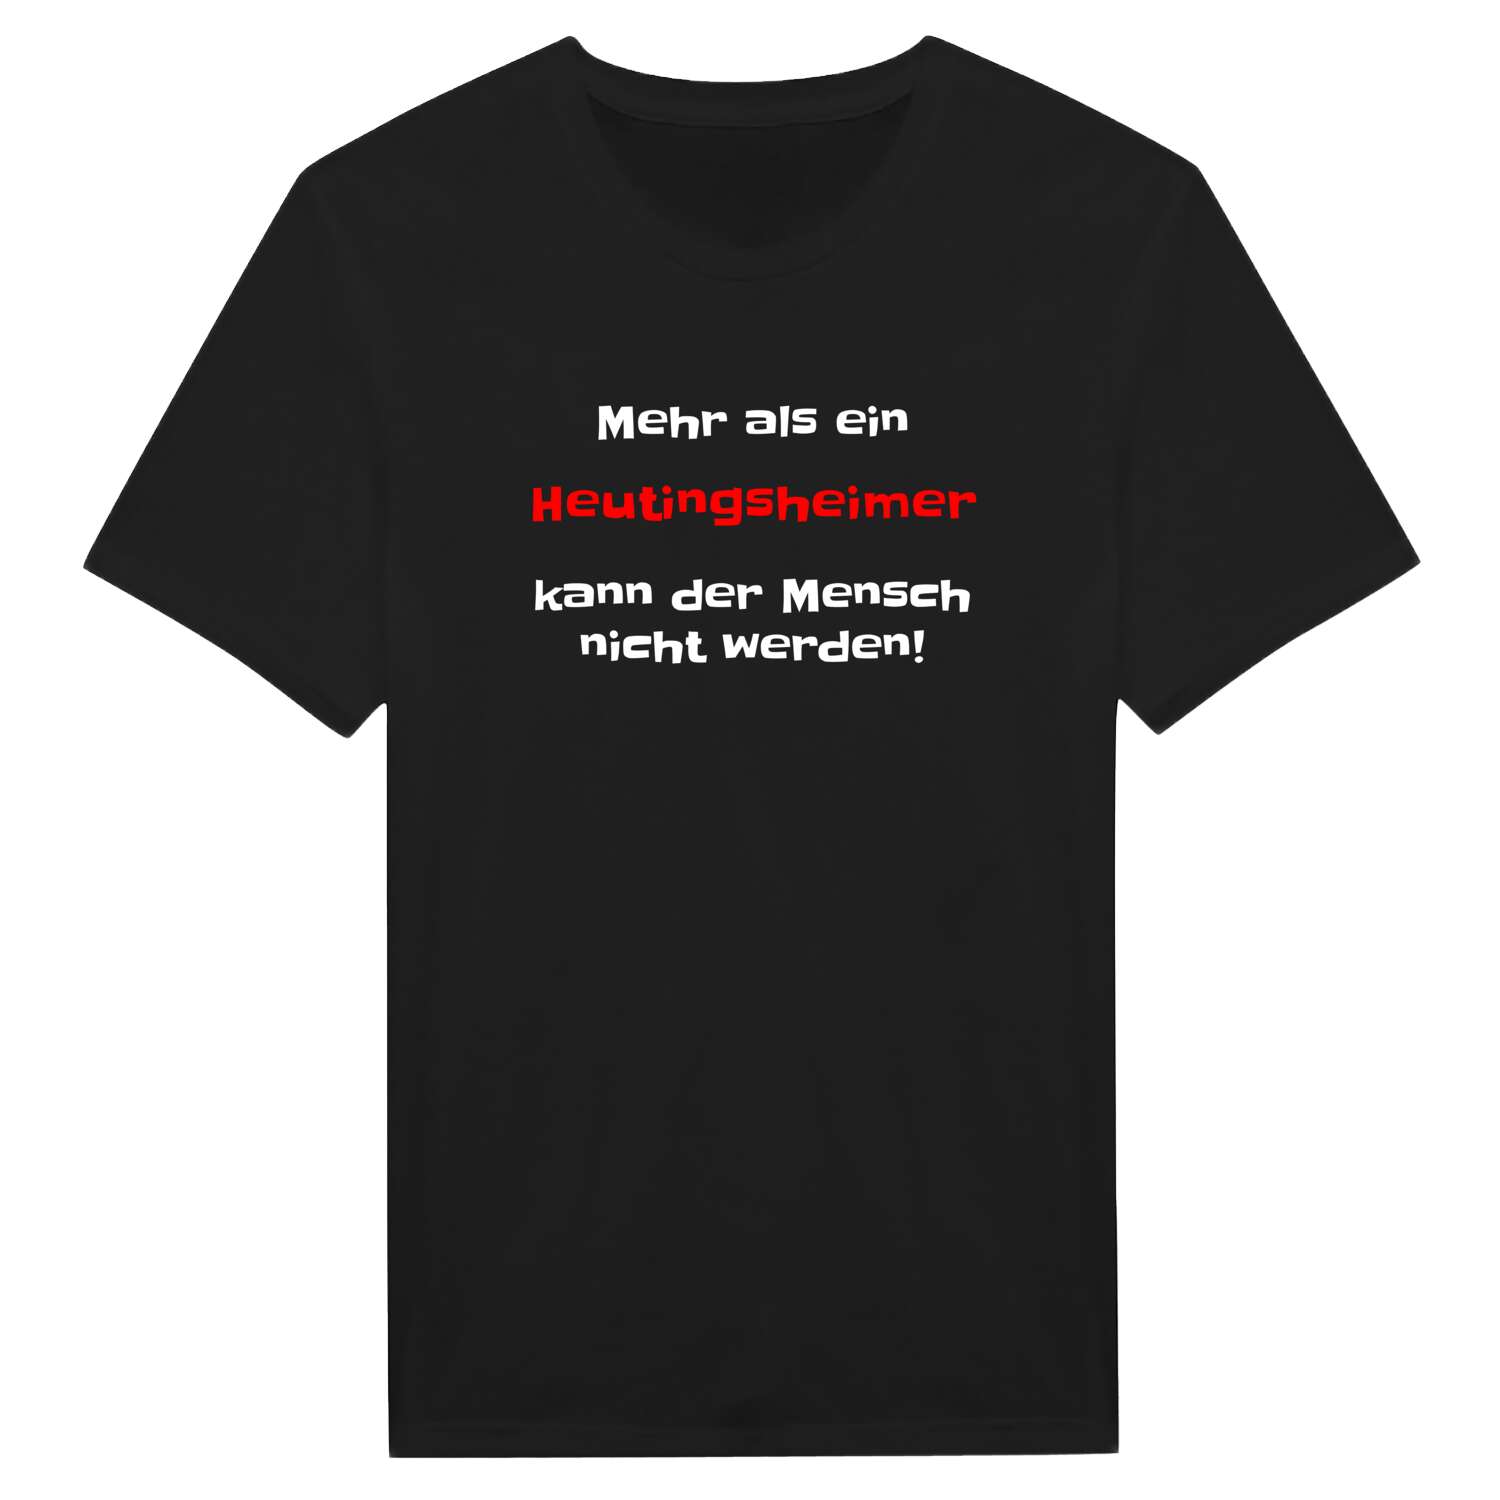 Heutingsheim T-Shirt »Mehr als ein«